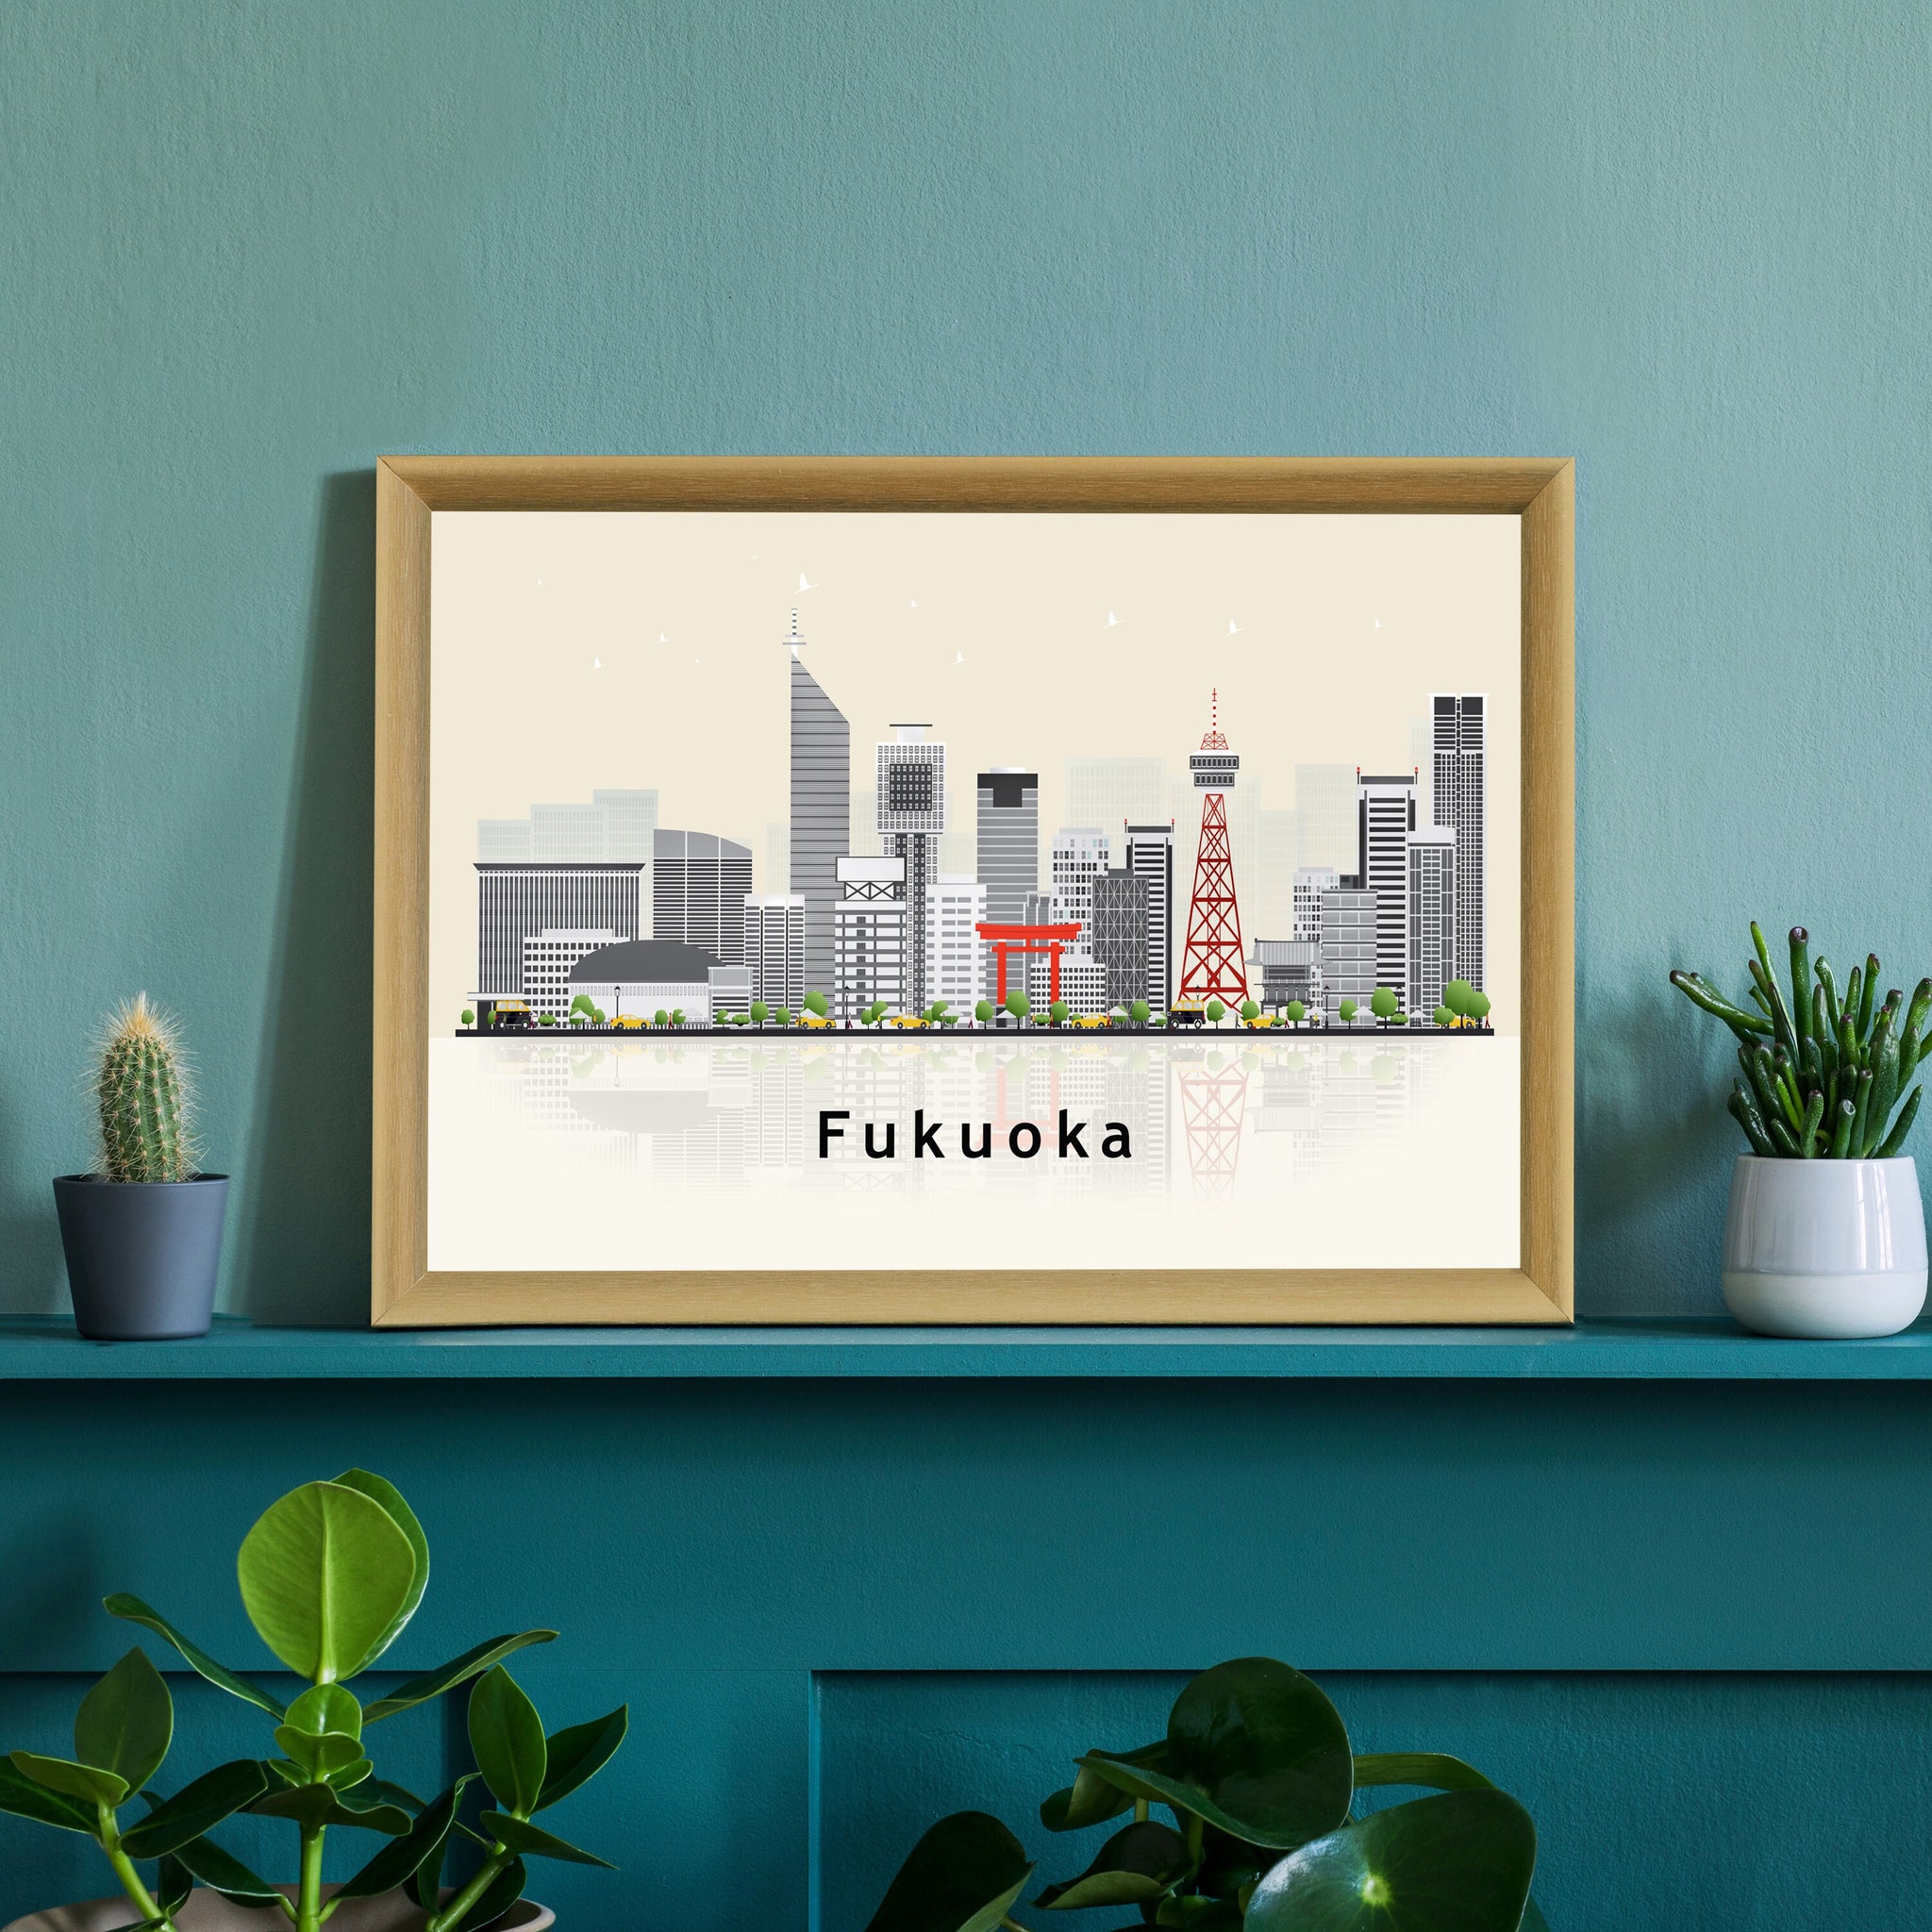 FUKUOKA JAPAN Illustration skyline poster, Modern skyline cityscape poster, Japan Fukuoka city skyline landmark map poster, Home wall art